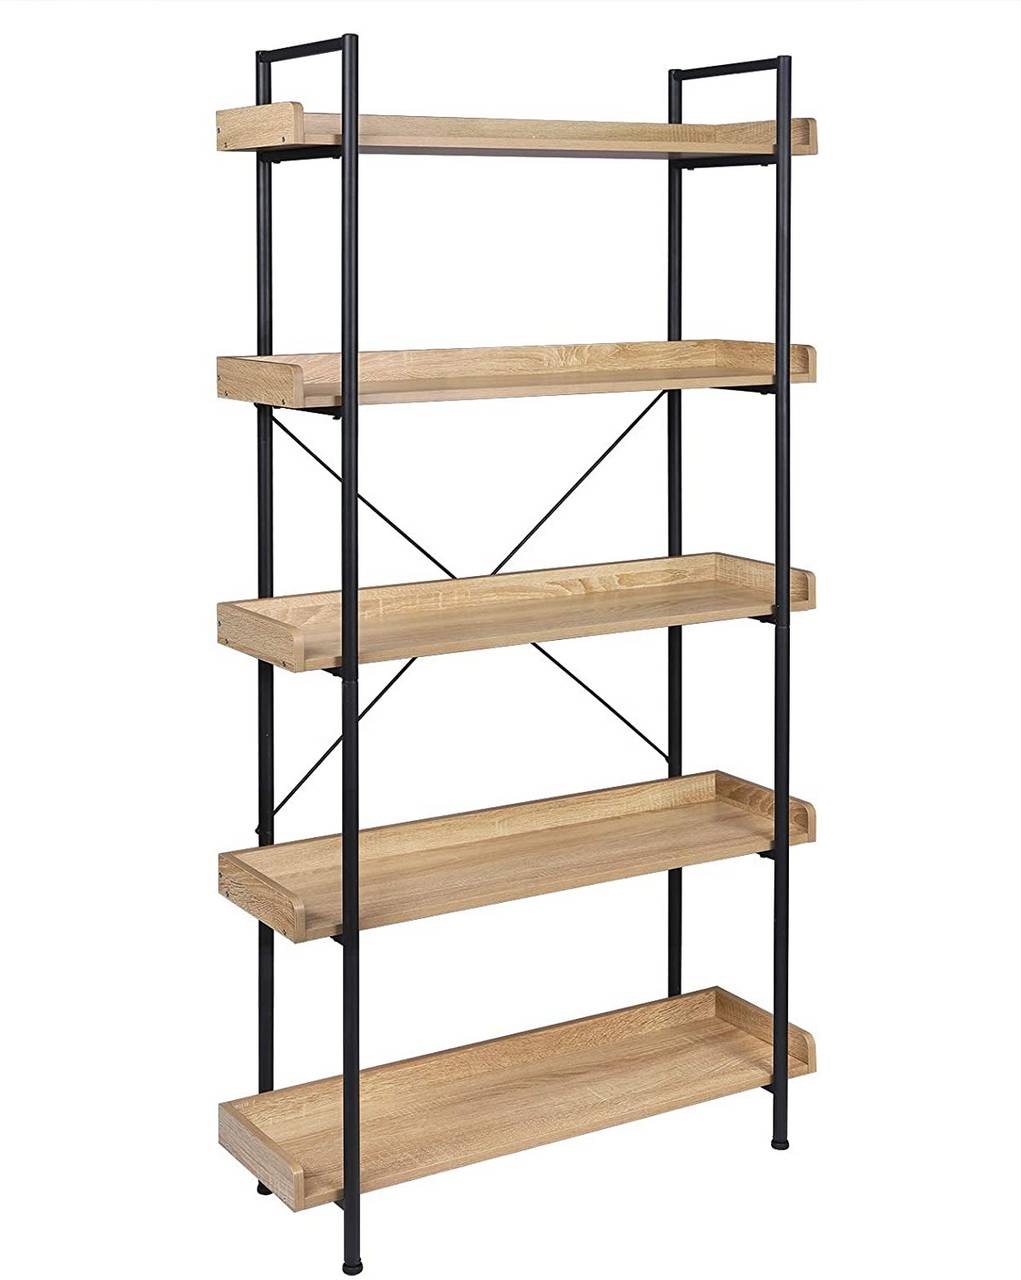 UTEX Estante de escalera de 4 niveles, estante de baño independiente,  unidad de estantería de madera abierta de 4 estantes, estante de escalera